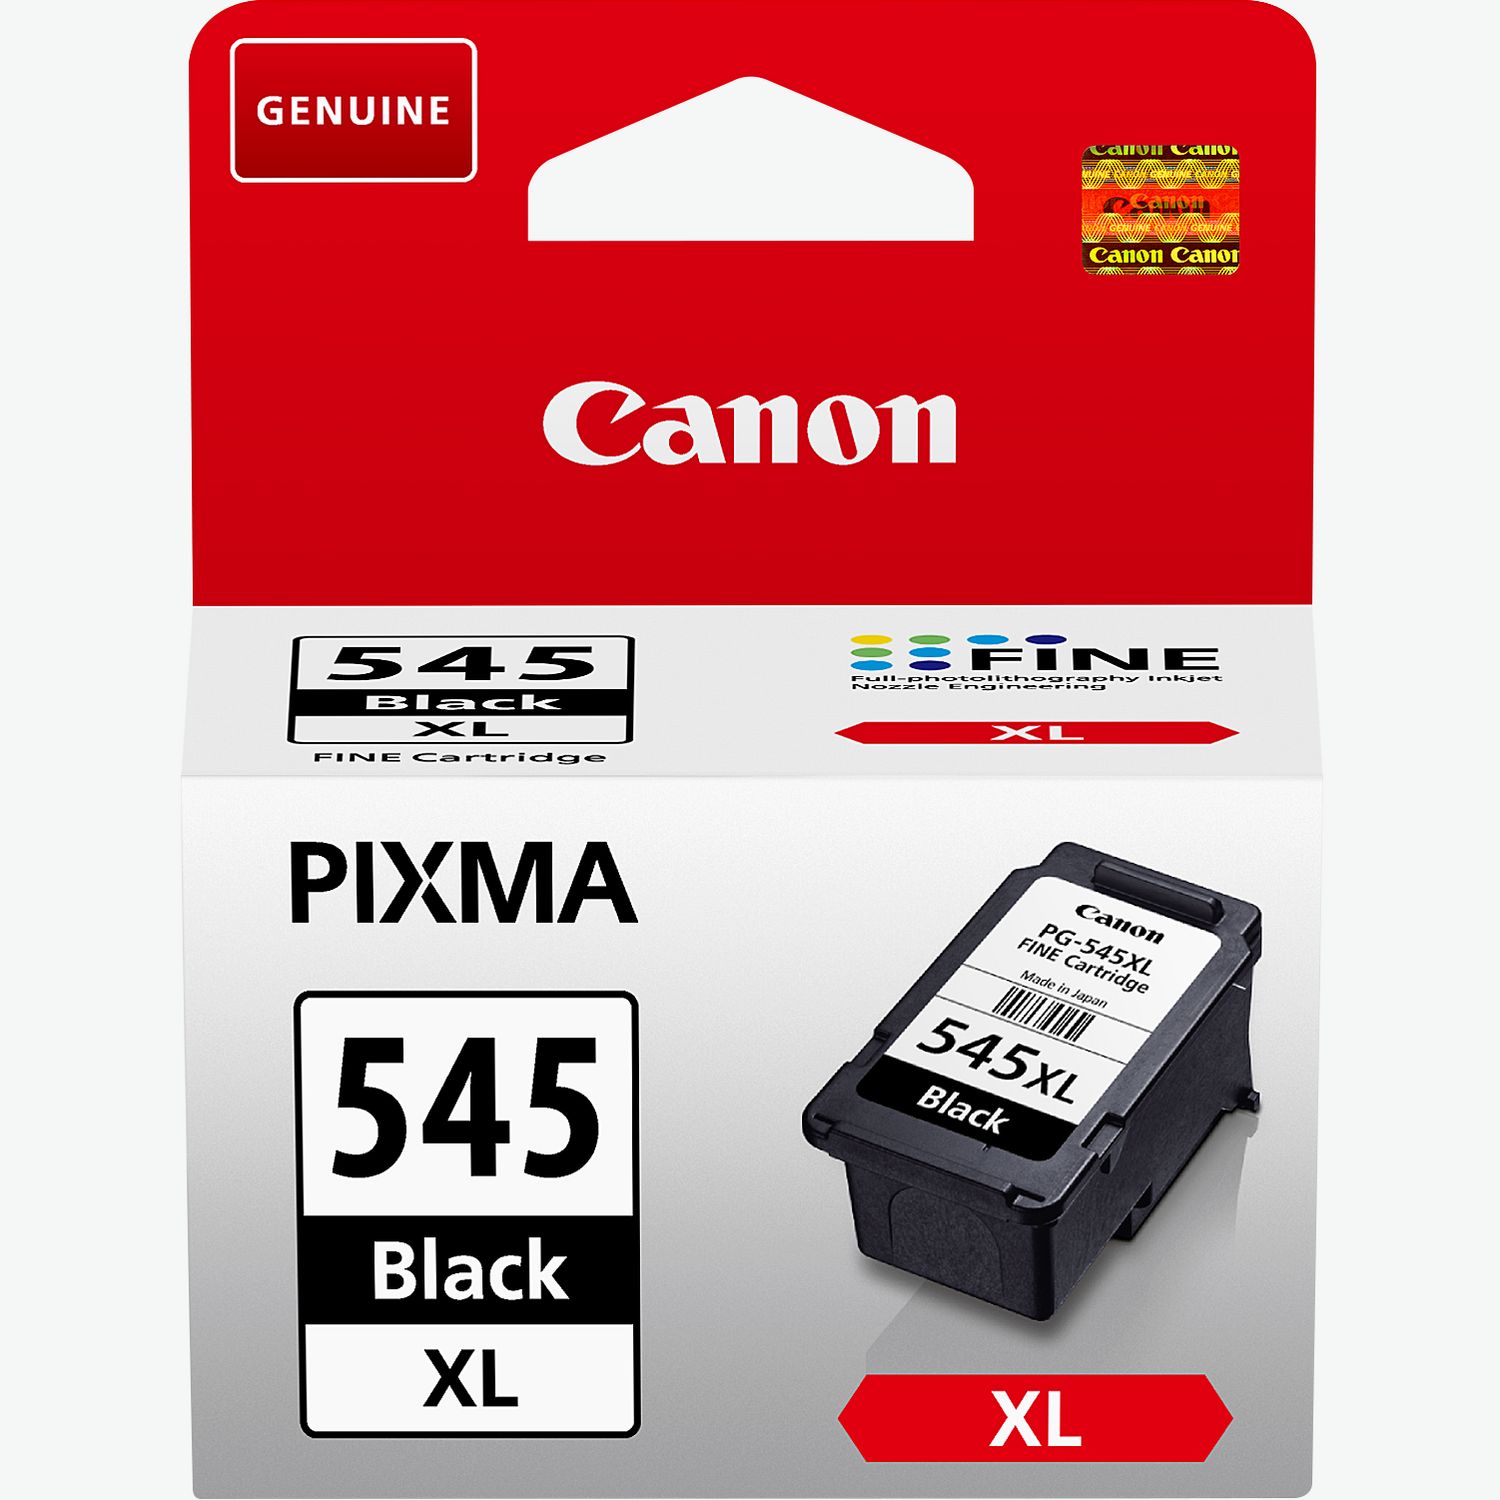 Série Canon PIXMA TS3450 - Canon France